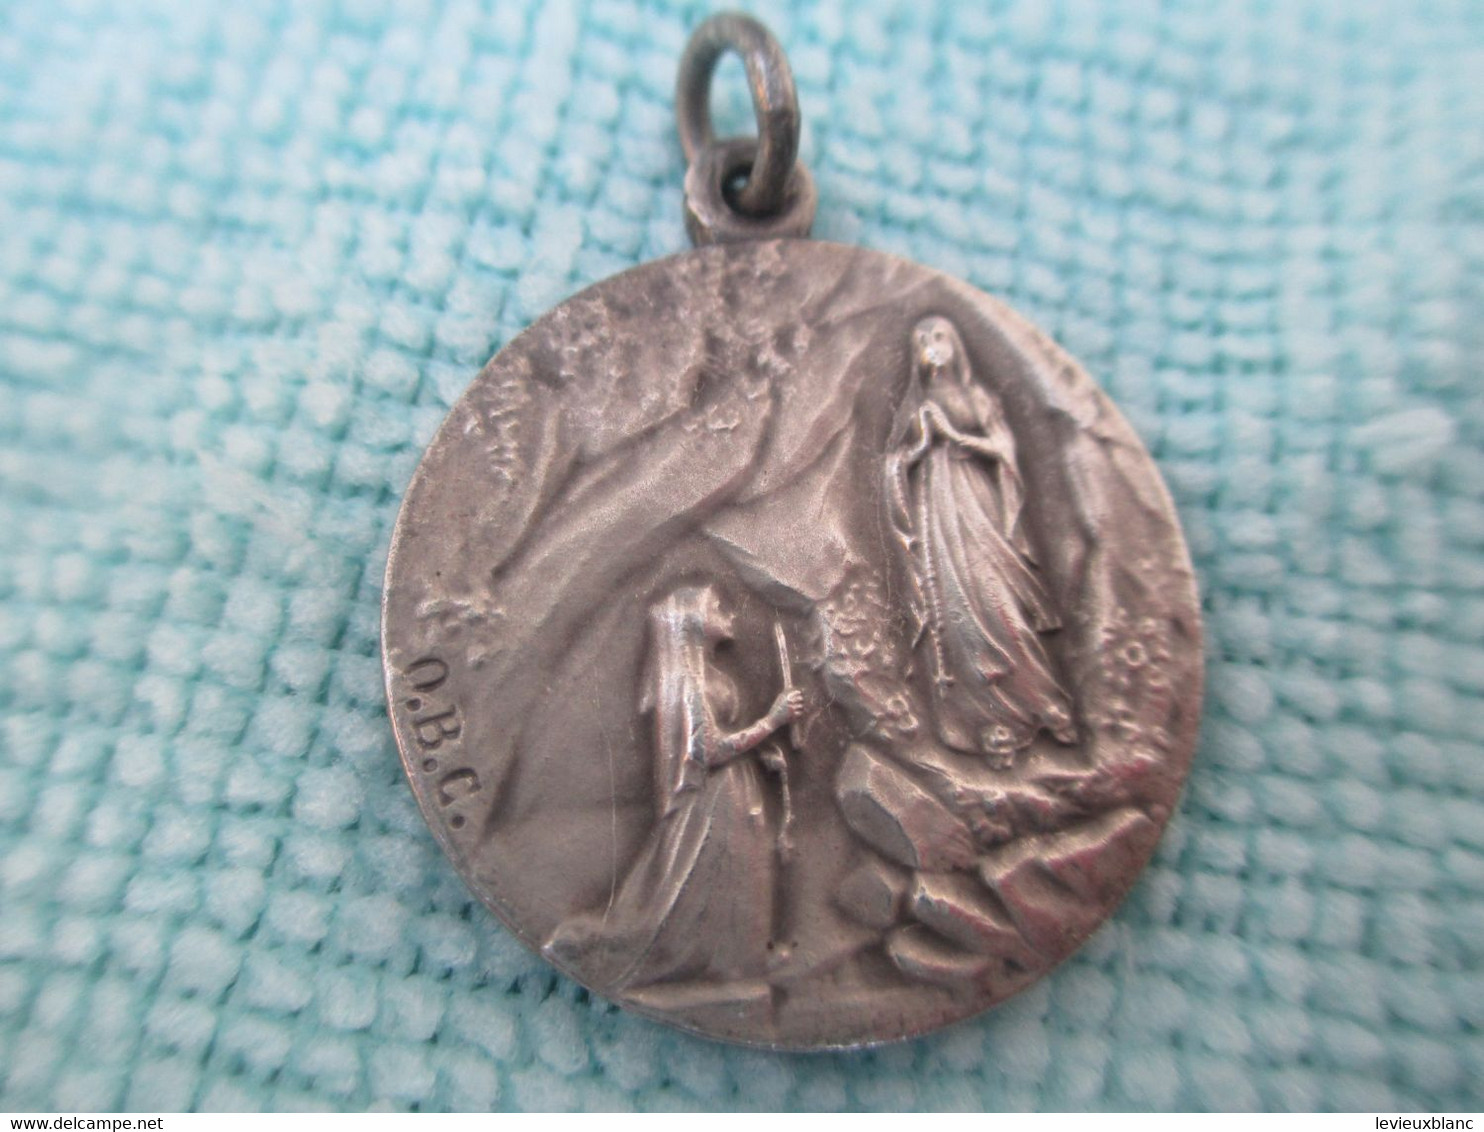 Médaille Pieuse Ancienne/LOURDES/ Souvenir Du Cinquantenaire Des Apparitions/1858-1908/Nickel/1908  CAN 676 - Religion & Esotericism